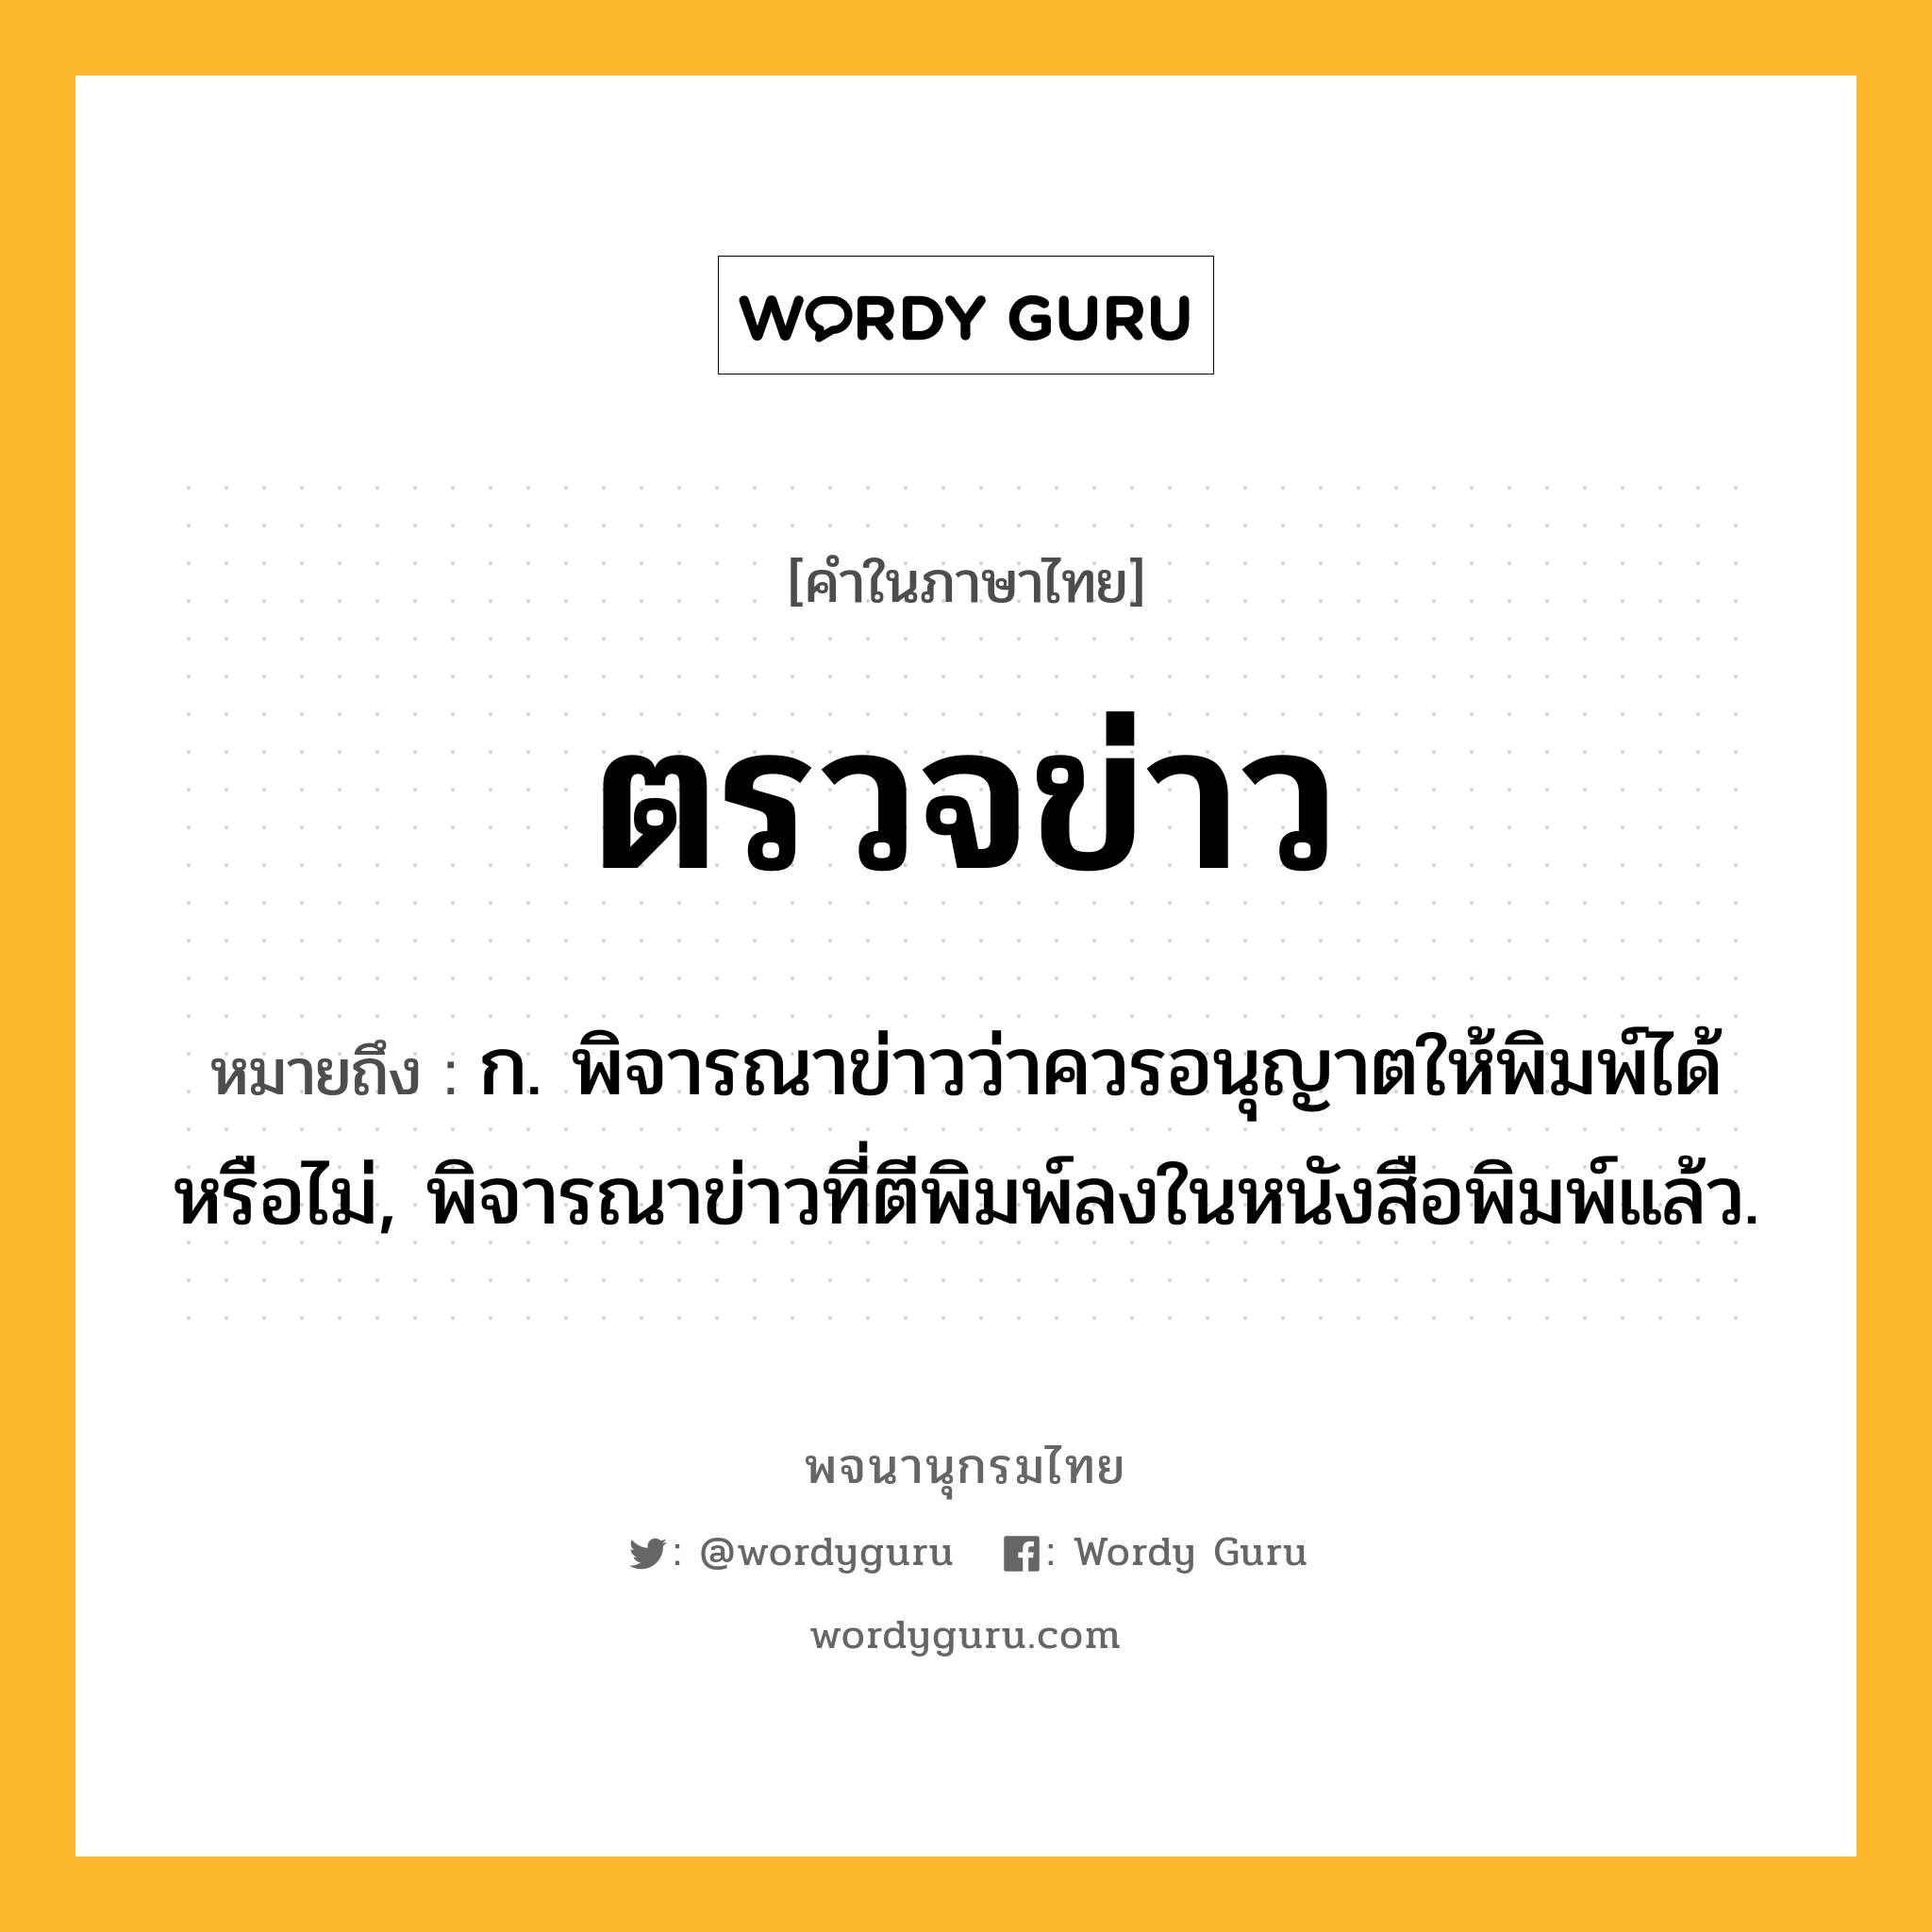 ตรวจข่าว ความหมาย หมายถึงอะไร?, คำในภาษาไทย ตรวจข่าว หมายถึง ก. พิจารณาข่าวว่าควรอนุญาตให้พิมพ์ได้หรือไม่, พิจารณาข่าวที่ตีพิมพ์ลงในหนังสือพิมพ์แล้ว.